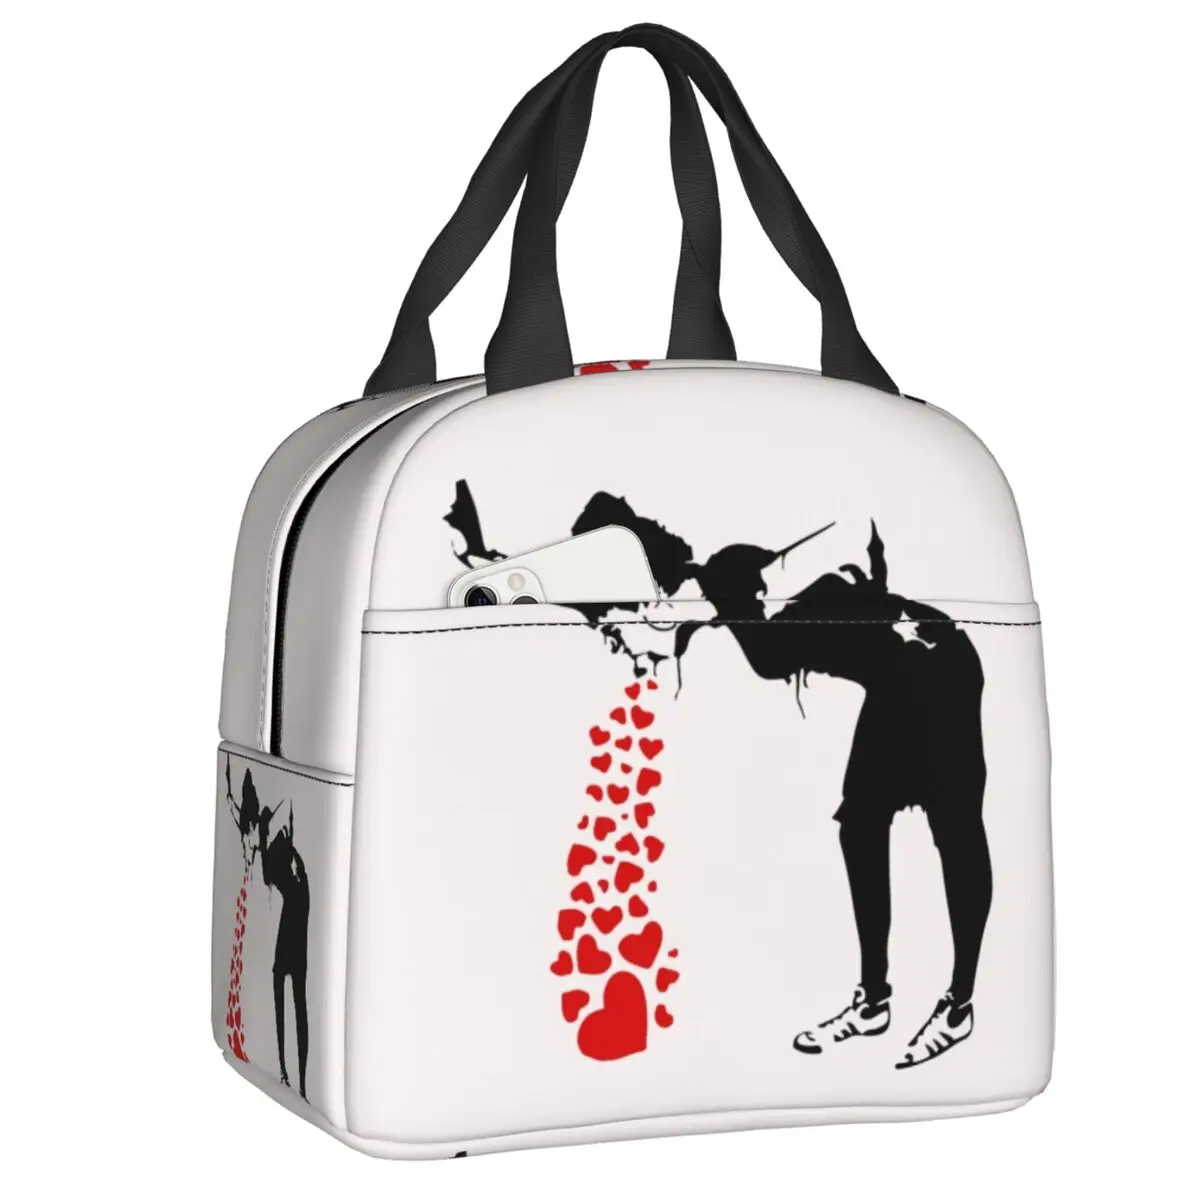 

Изолированная сумка-тоут для ланча Banksy Lovesick grafтермосумка для женщин термо-охладитель коробка бэнто для кемпинга на открытом воздухе путешествий пикника пищевые пакеты